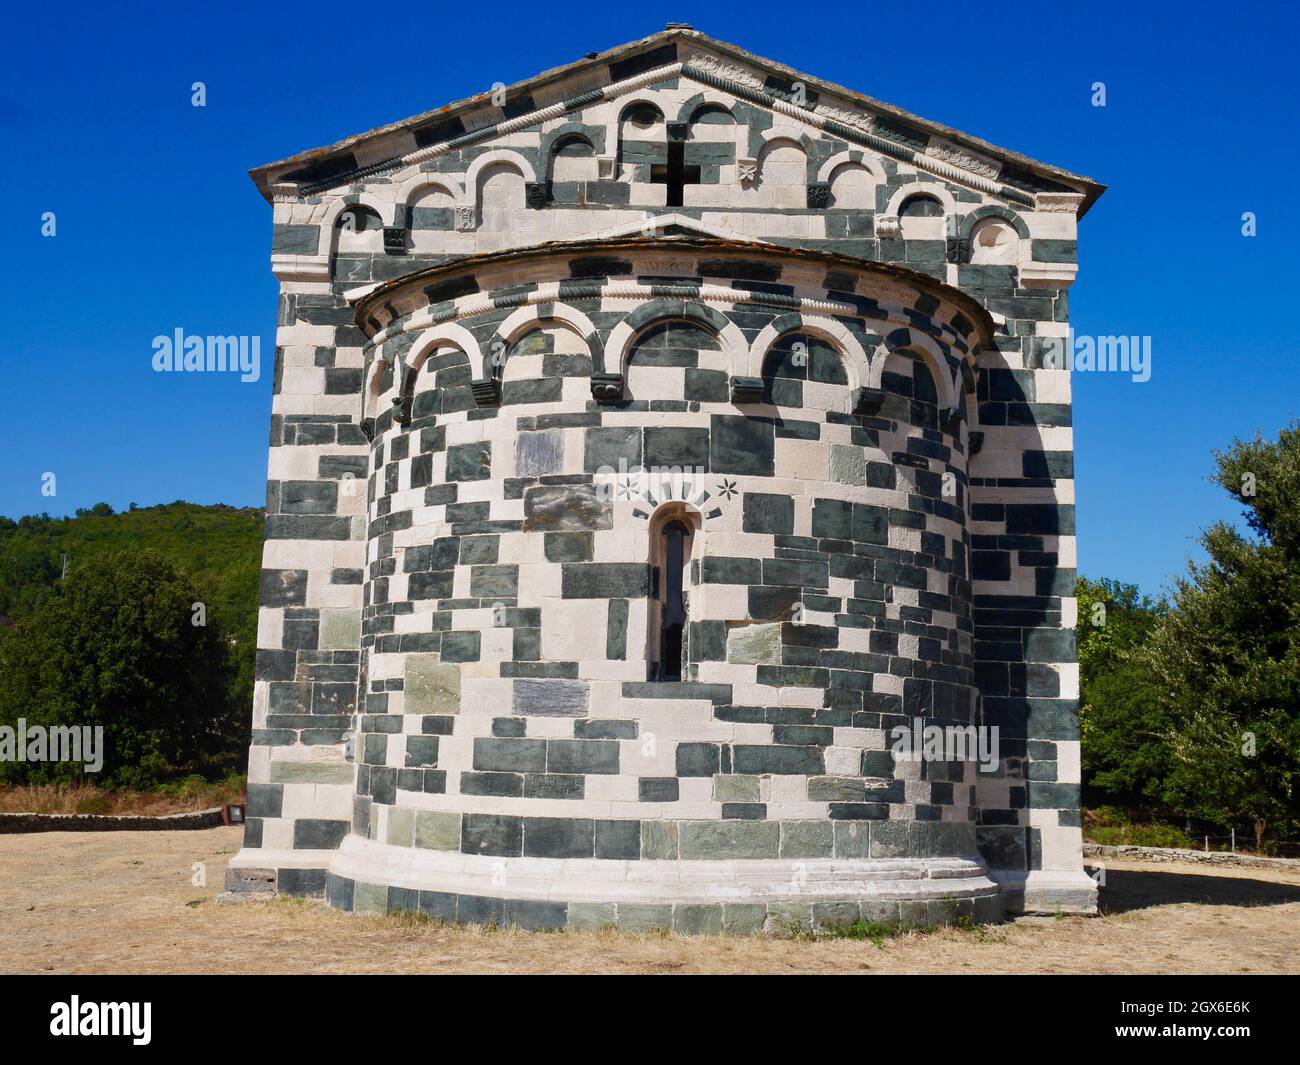 Iglesia románica de San Michele de Murato, monumento histórico, capilla de piedra policromada, Córcega, Francia. Foto de stock